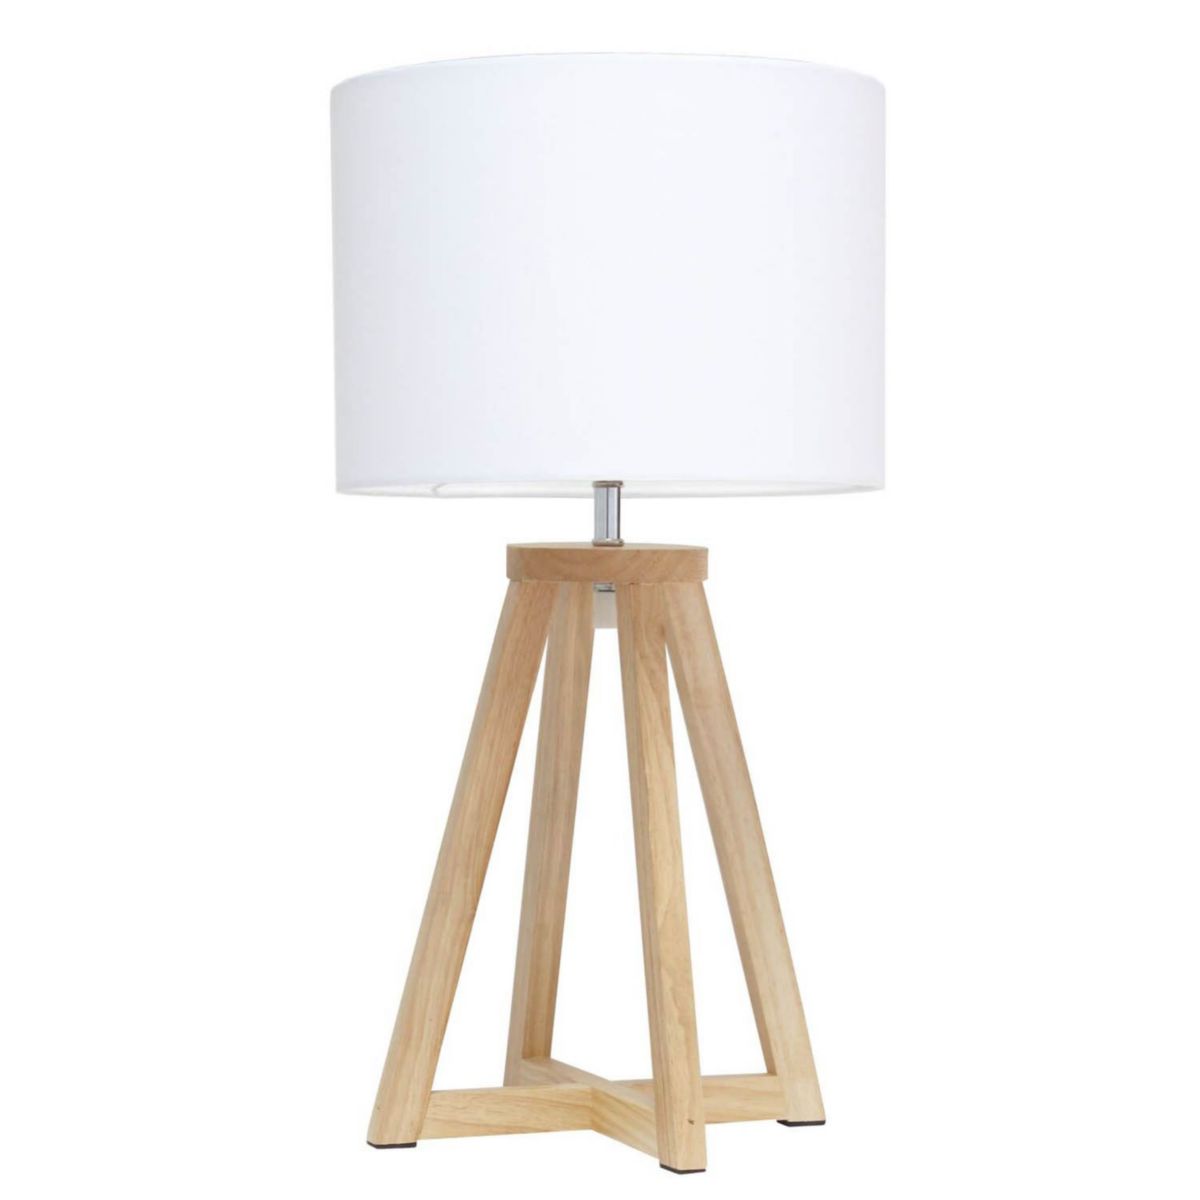 Настольная лампа Simple Designs Interlocked Triangular Natural Wood Table Lamp с абажуром из белой ткани Simple Designs